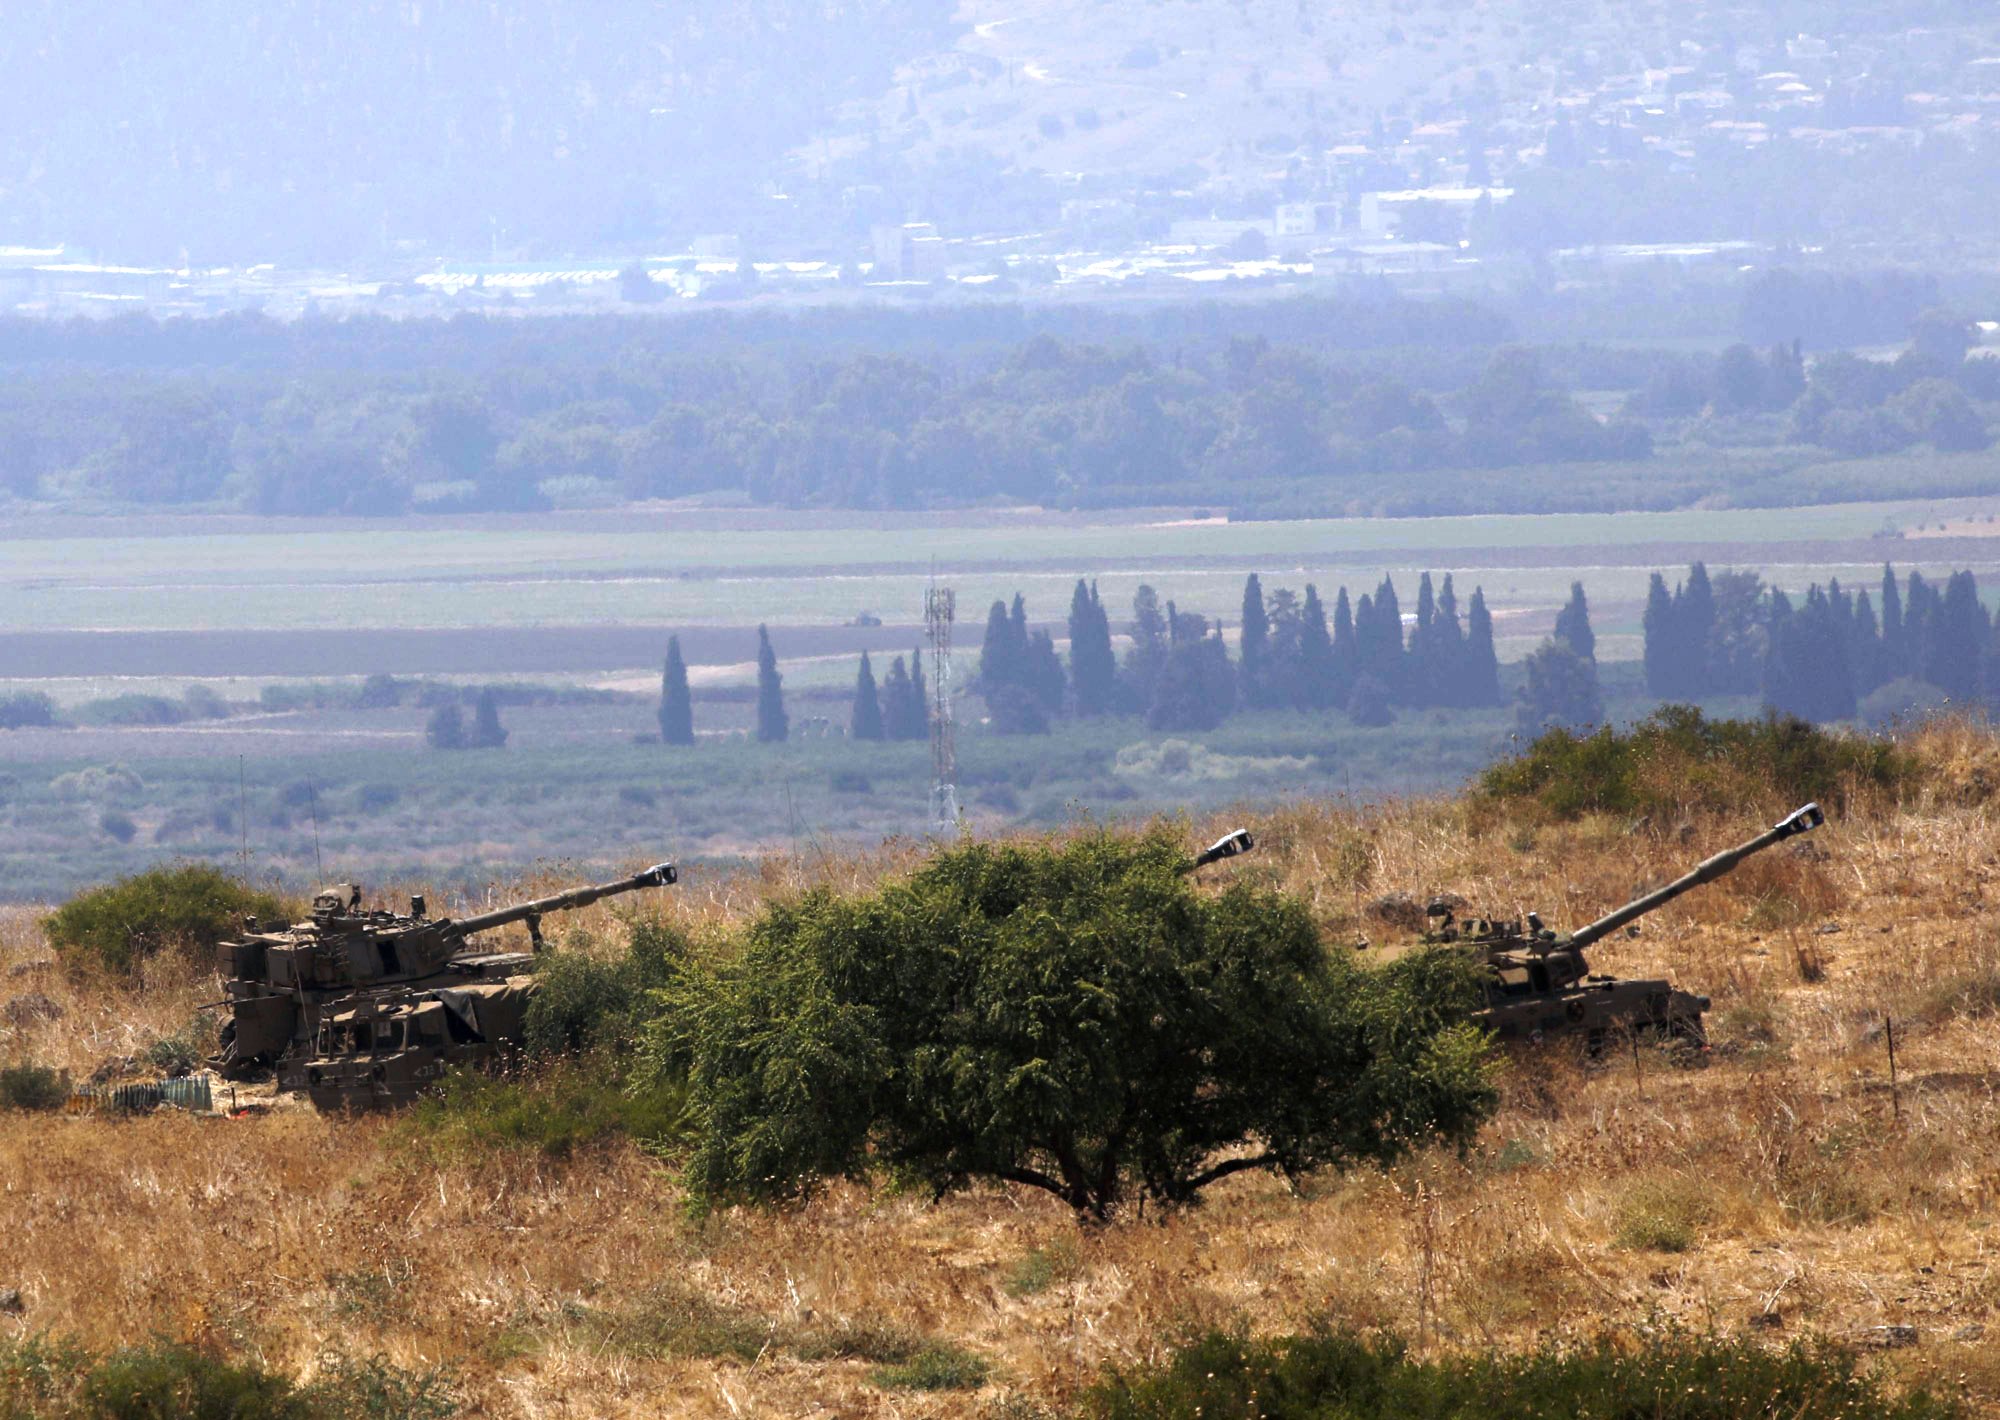 إسرائيل تقول إنها ردت على هجوم حزب الله بقصف مدفعي وغارات جوية على أهداف في جنوب لبنان